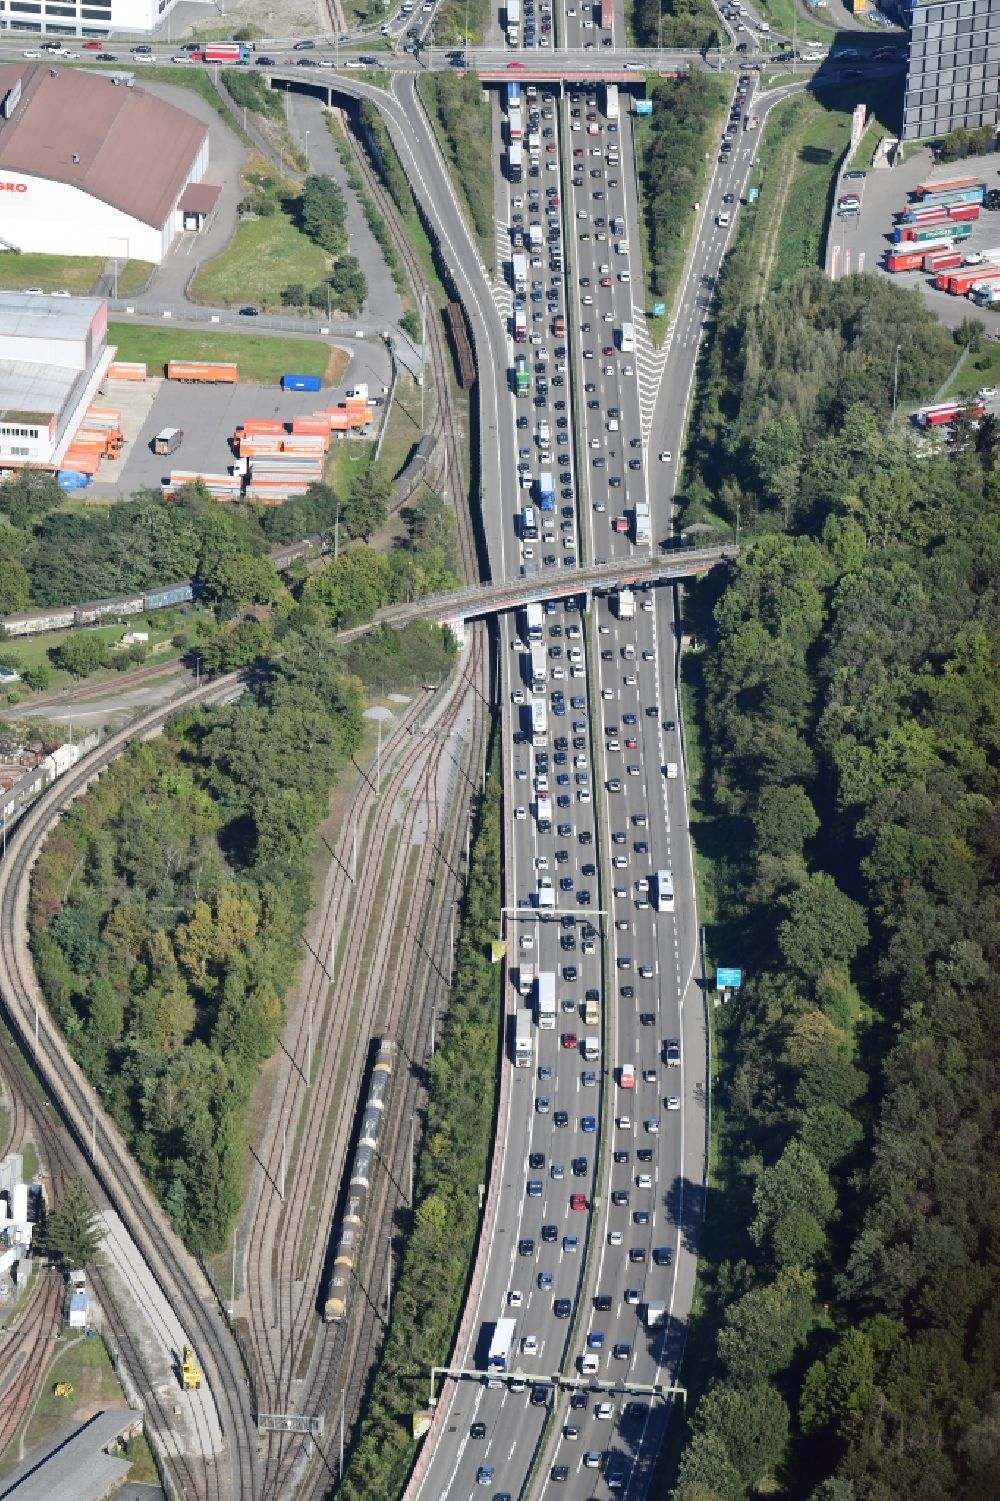 Pratteln aus der Vogelperspektive: Autobahn- Stau im Streckenverlauf der schweizer Autobahn A2 / A3 in Pratteln im Kanton Basel-Landschaft, Schweiz